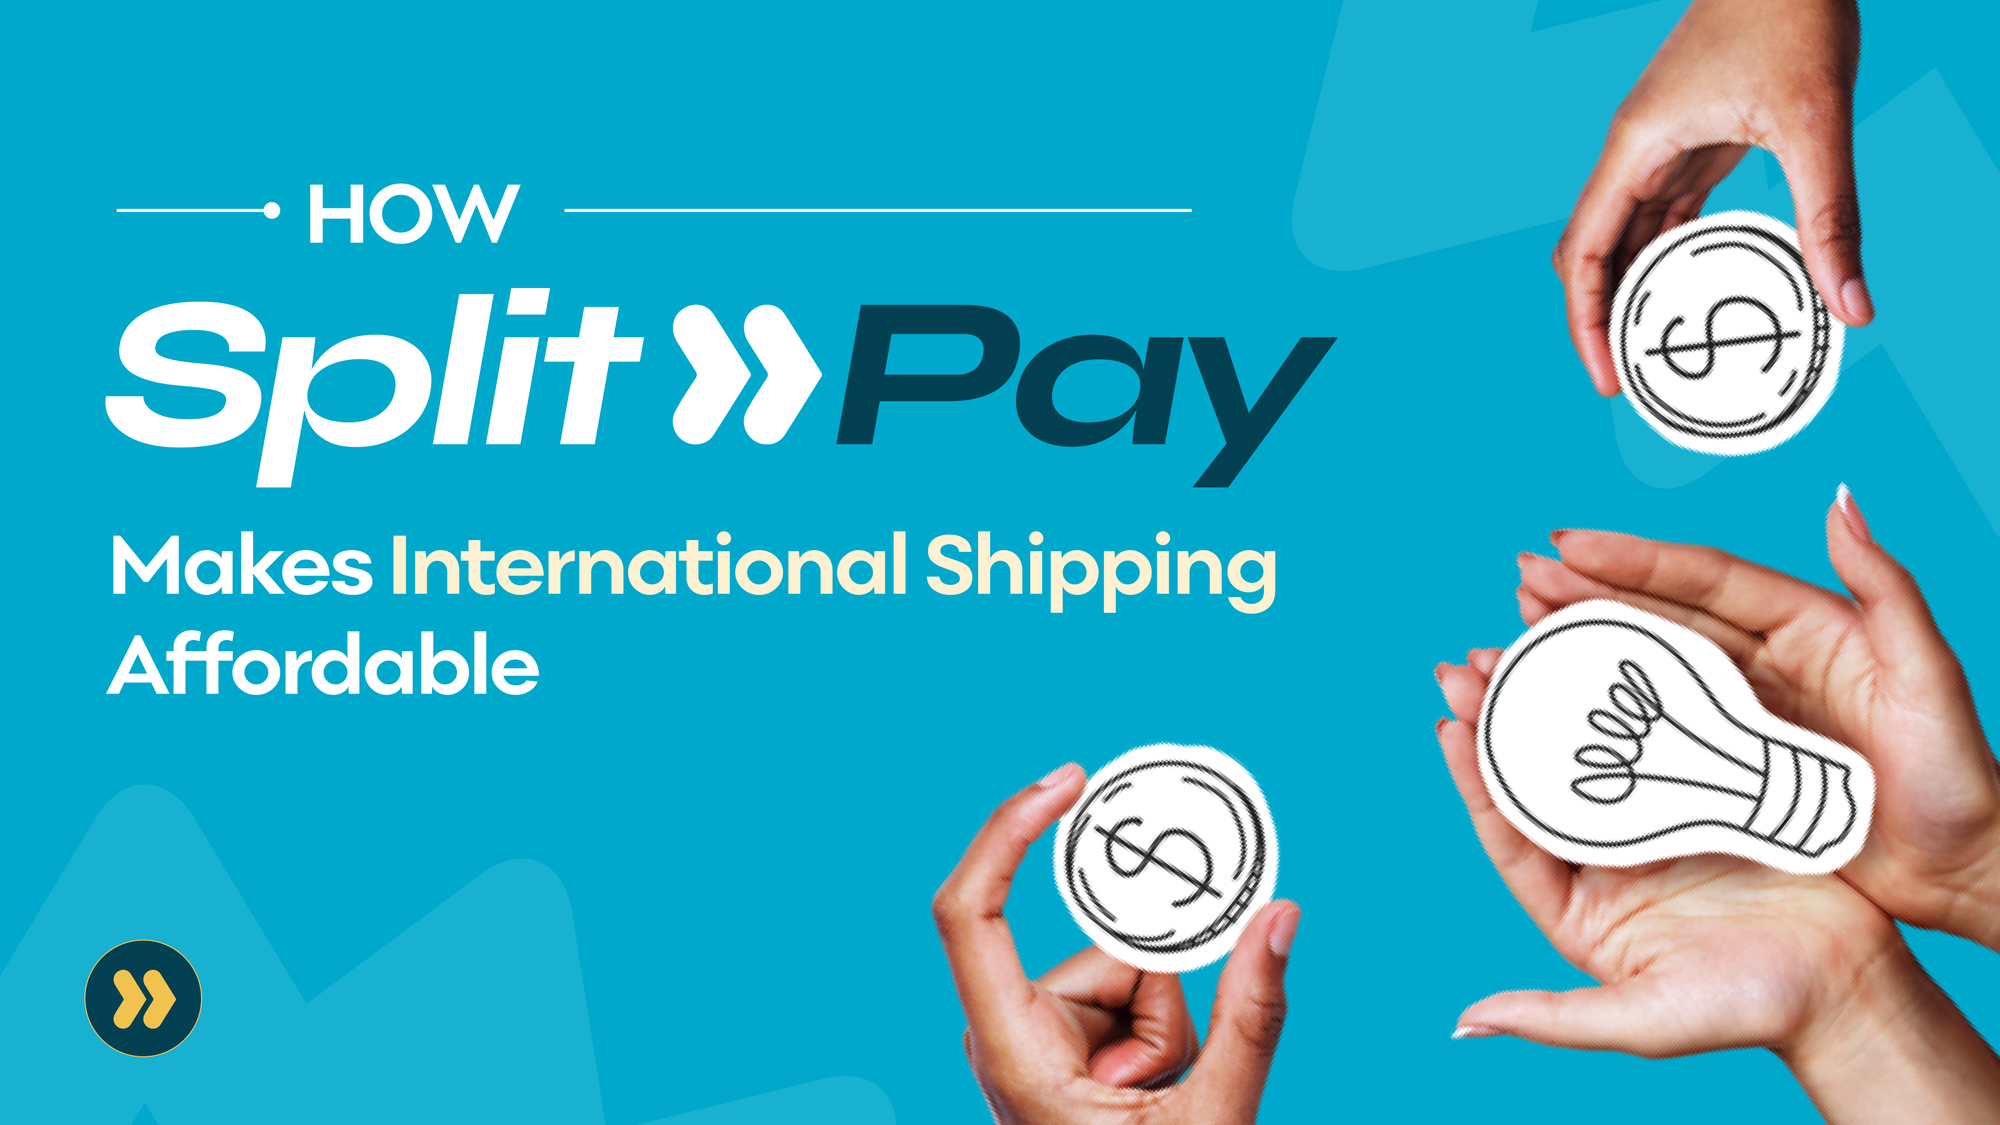 How Heroshe Split Pay Makes International Shipping Affordable